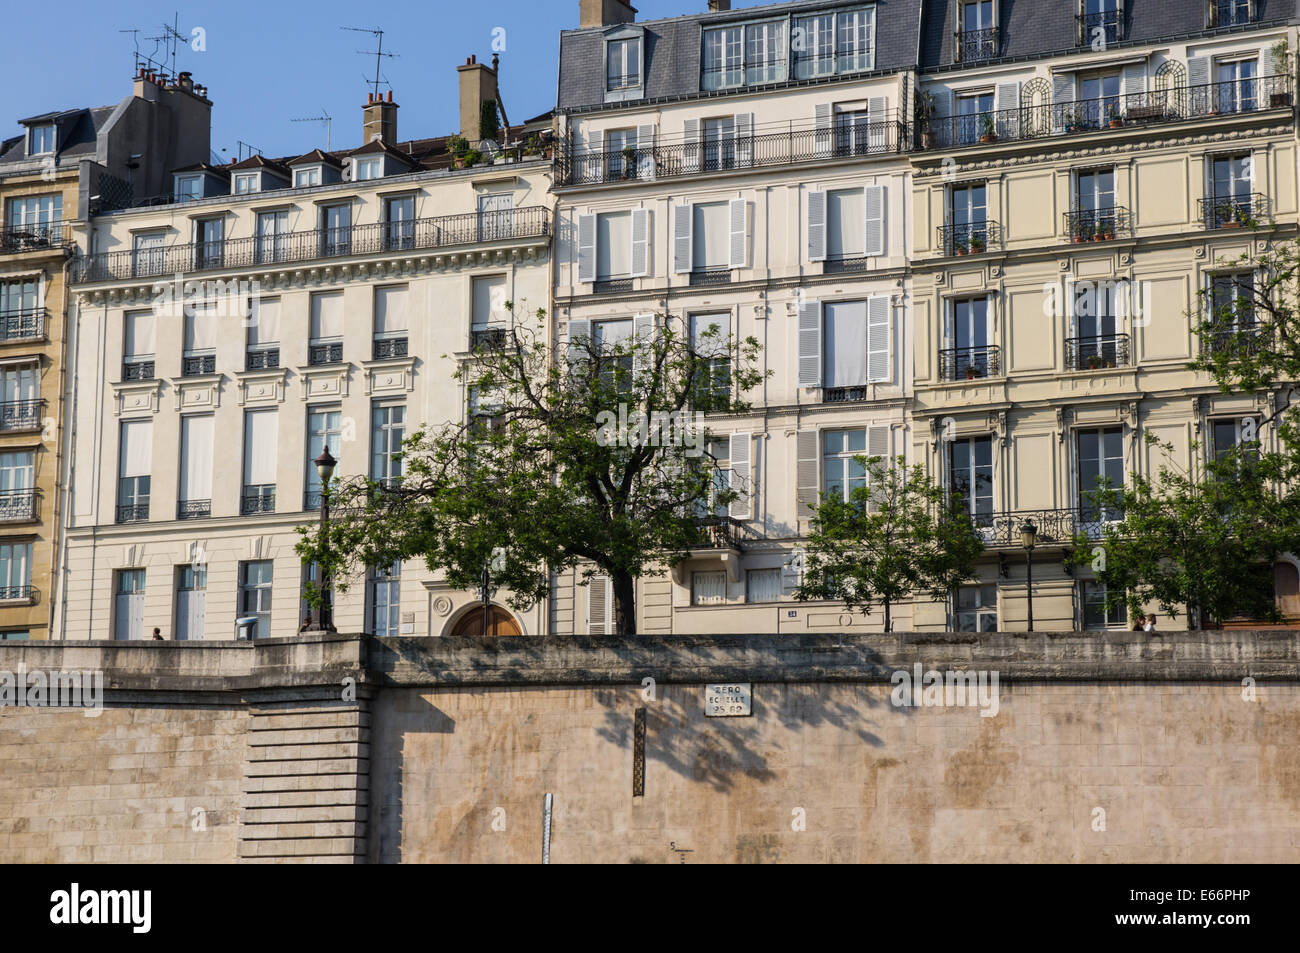 Edificios históricos vistos desde el río Sena en París, Francia Foto de stock